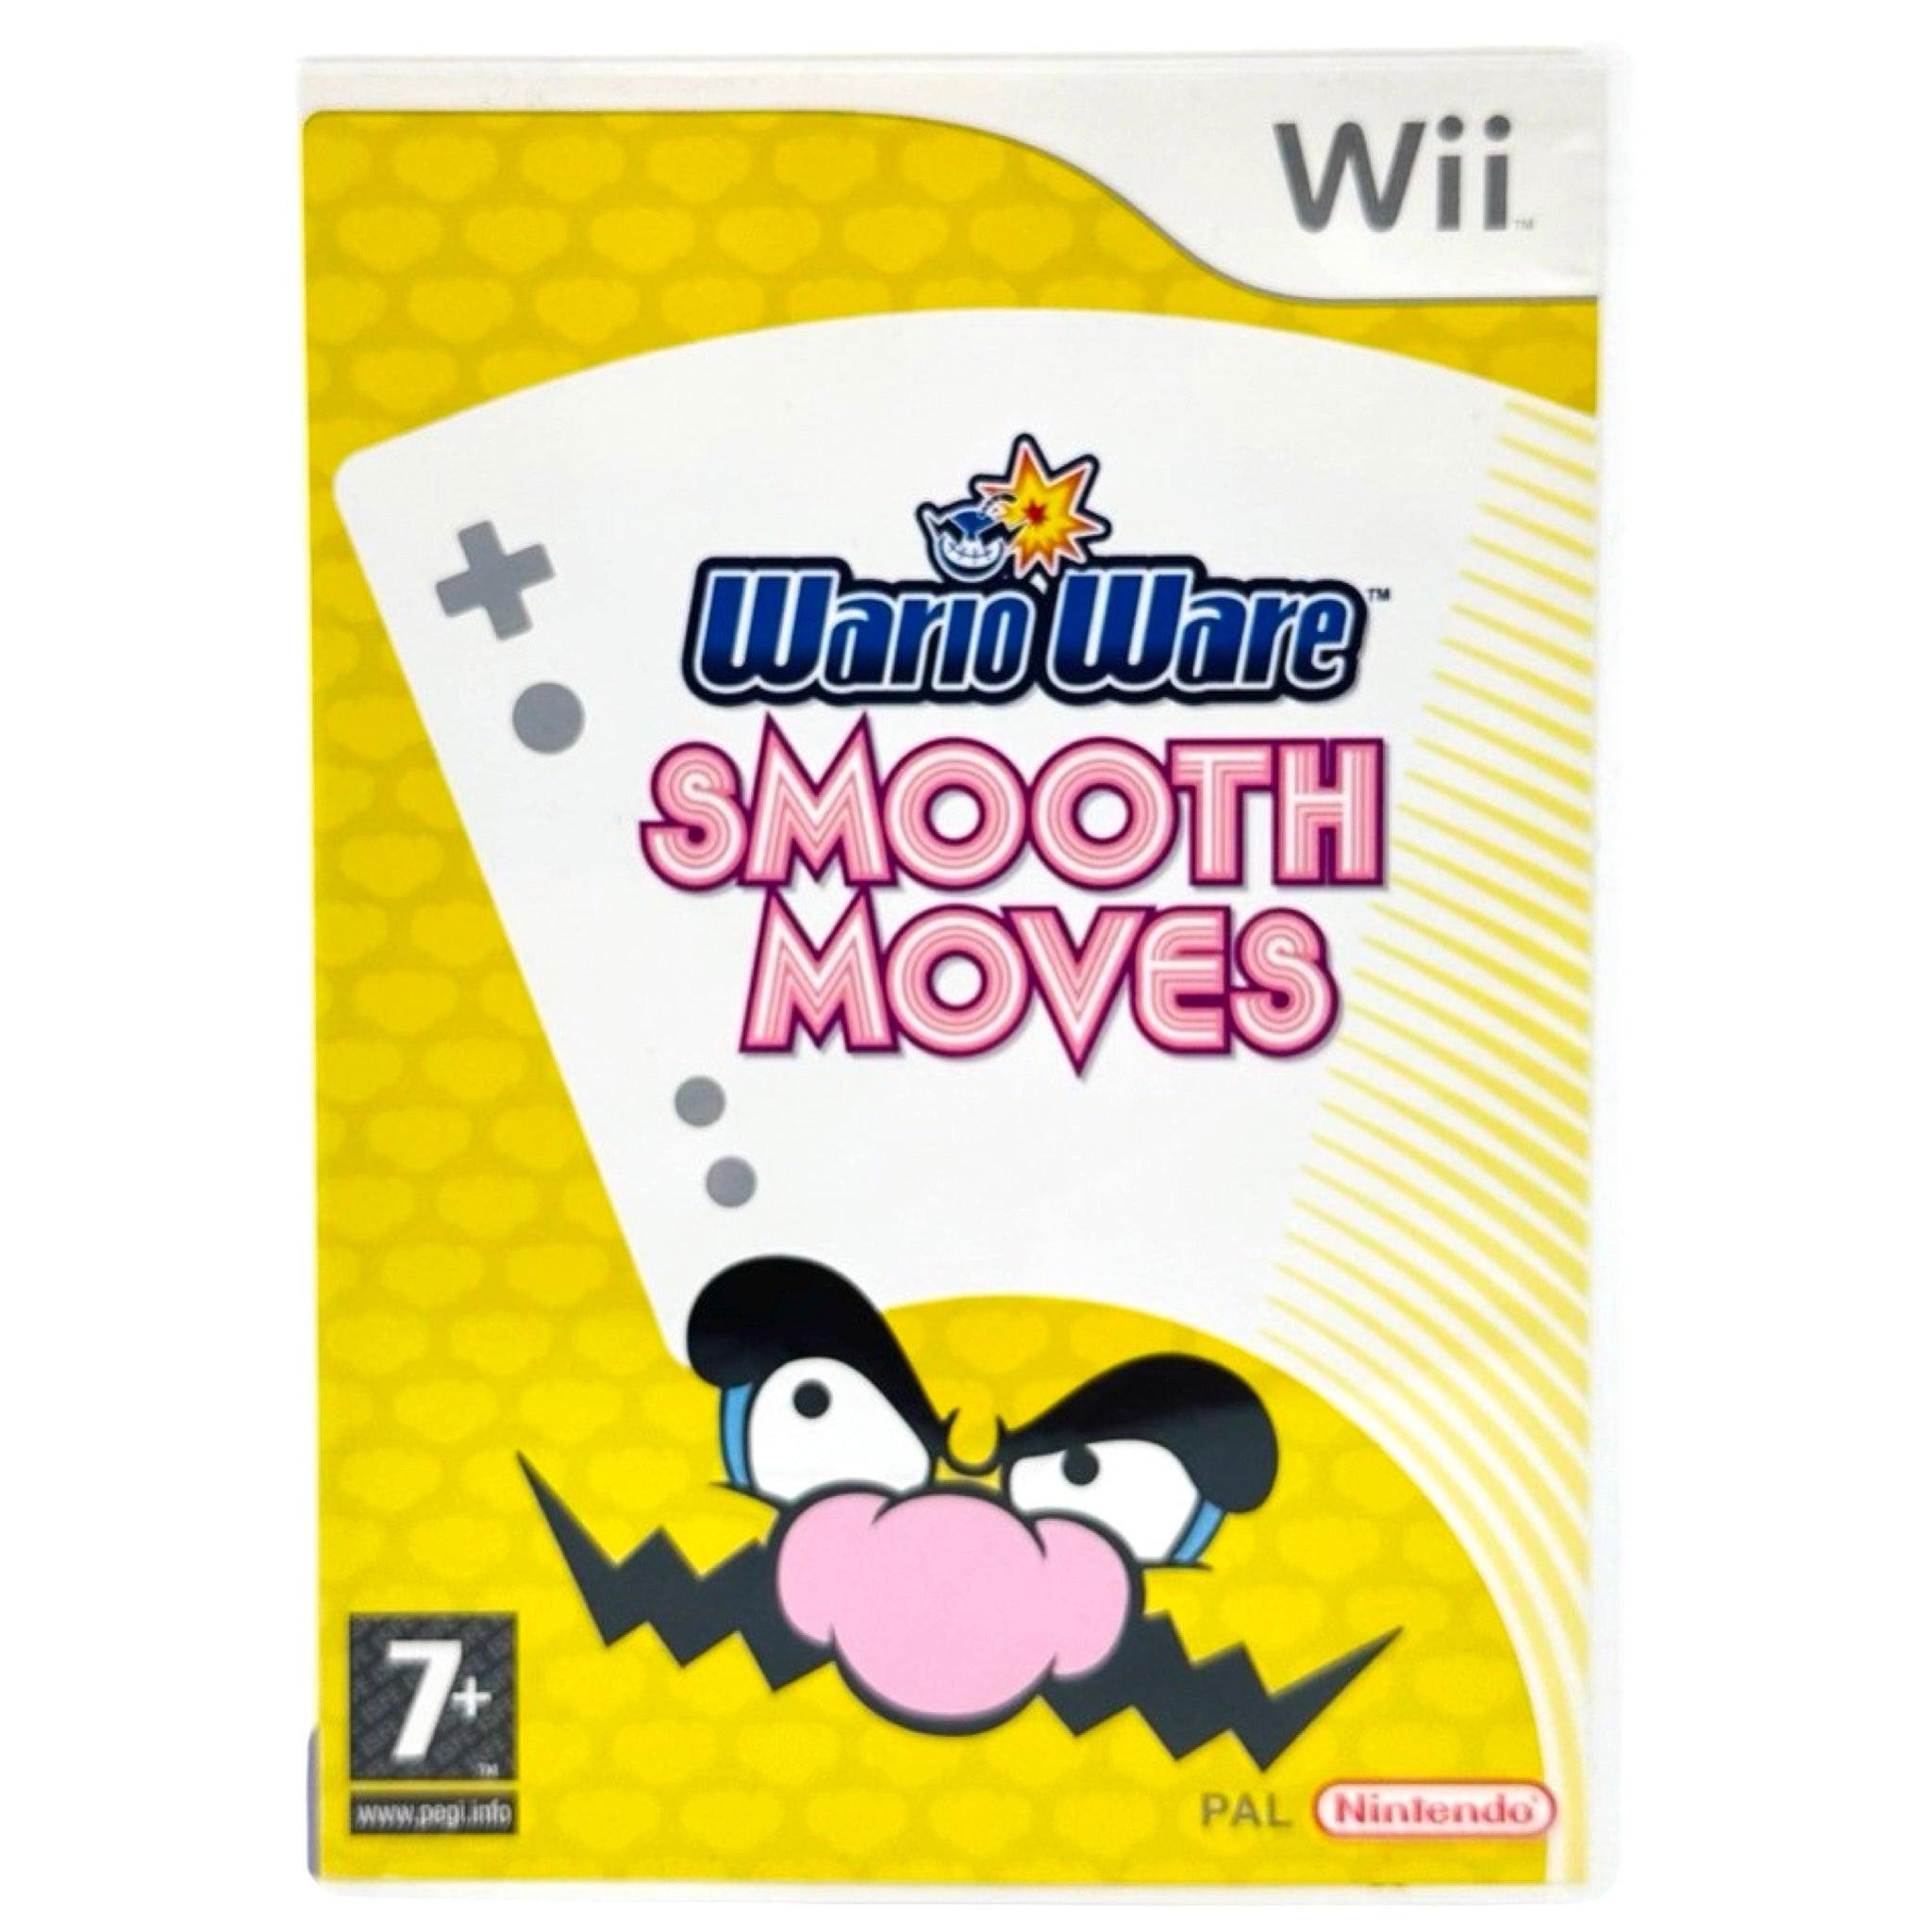 Wii: WarioWare Smooth Moves - RetroGaming.No